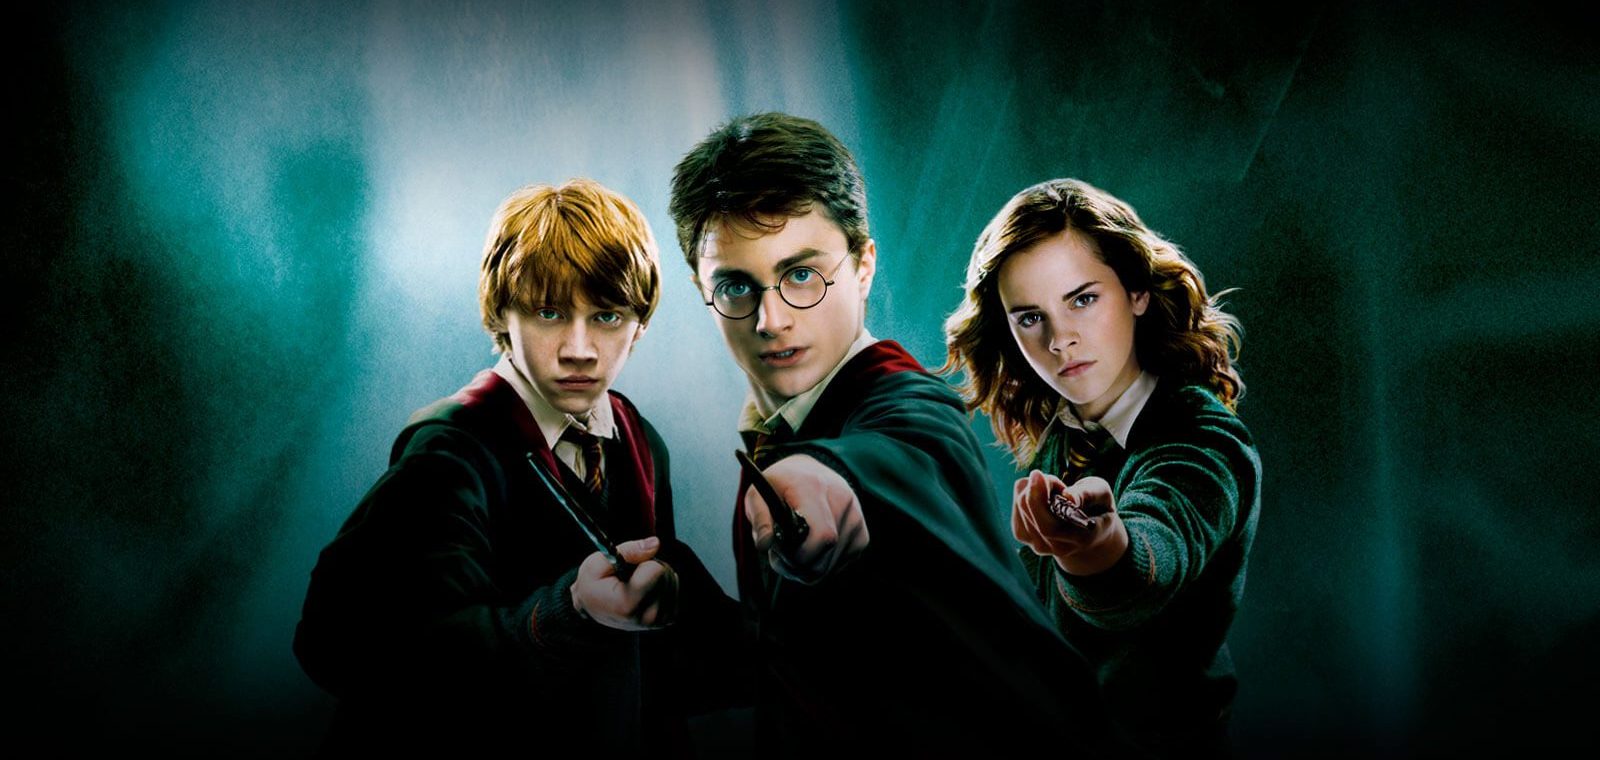 Tổng hợp hình ảnh Harry Potter đẹp nhất - [Kích thước hình ảnh: 1600x760 px]